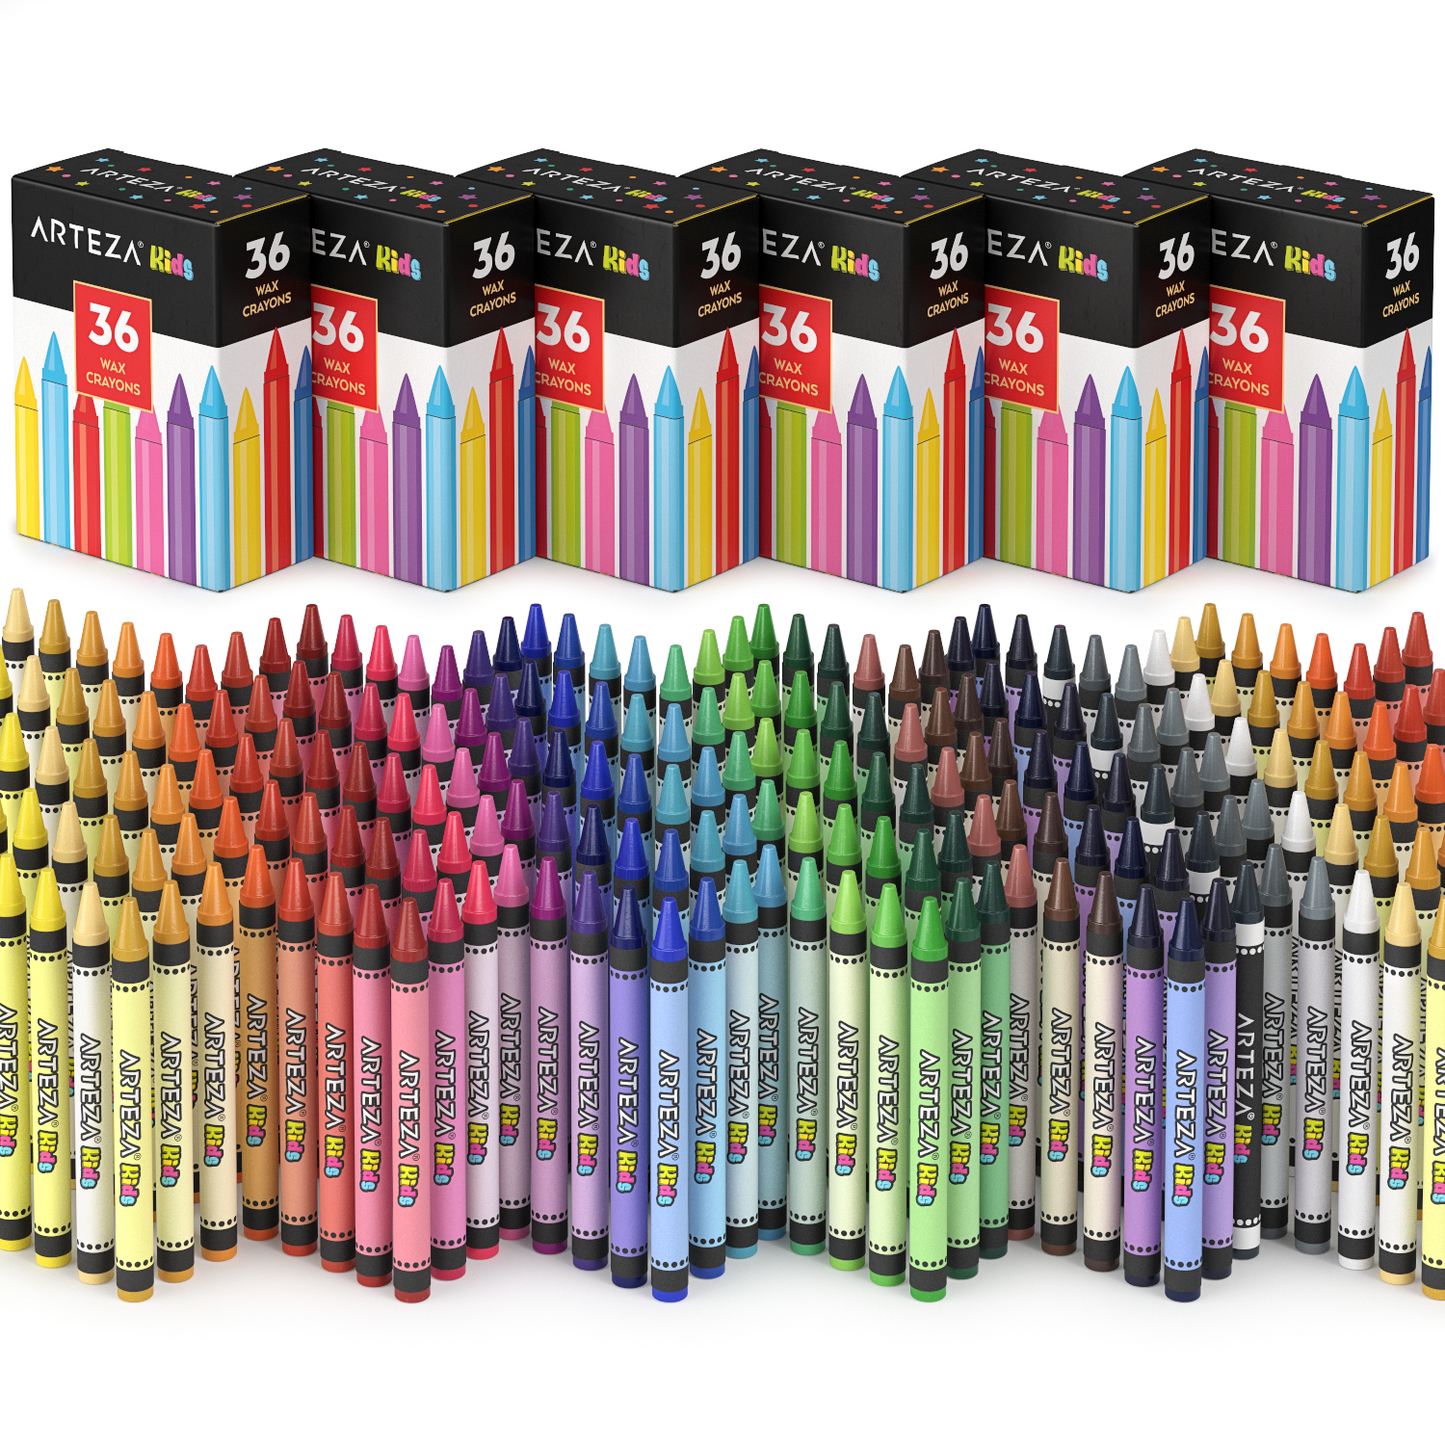 https://arteza.com/cdn/shop/products/kids-regular-crayons-sets-of-36-pack-of-216_Lwa37Jj5.png?v=1652894058&width=1445